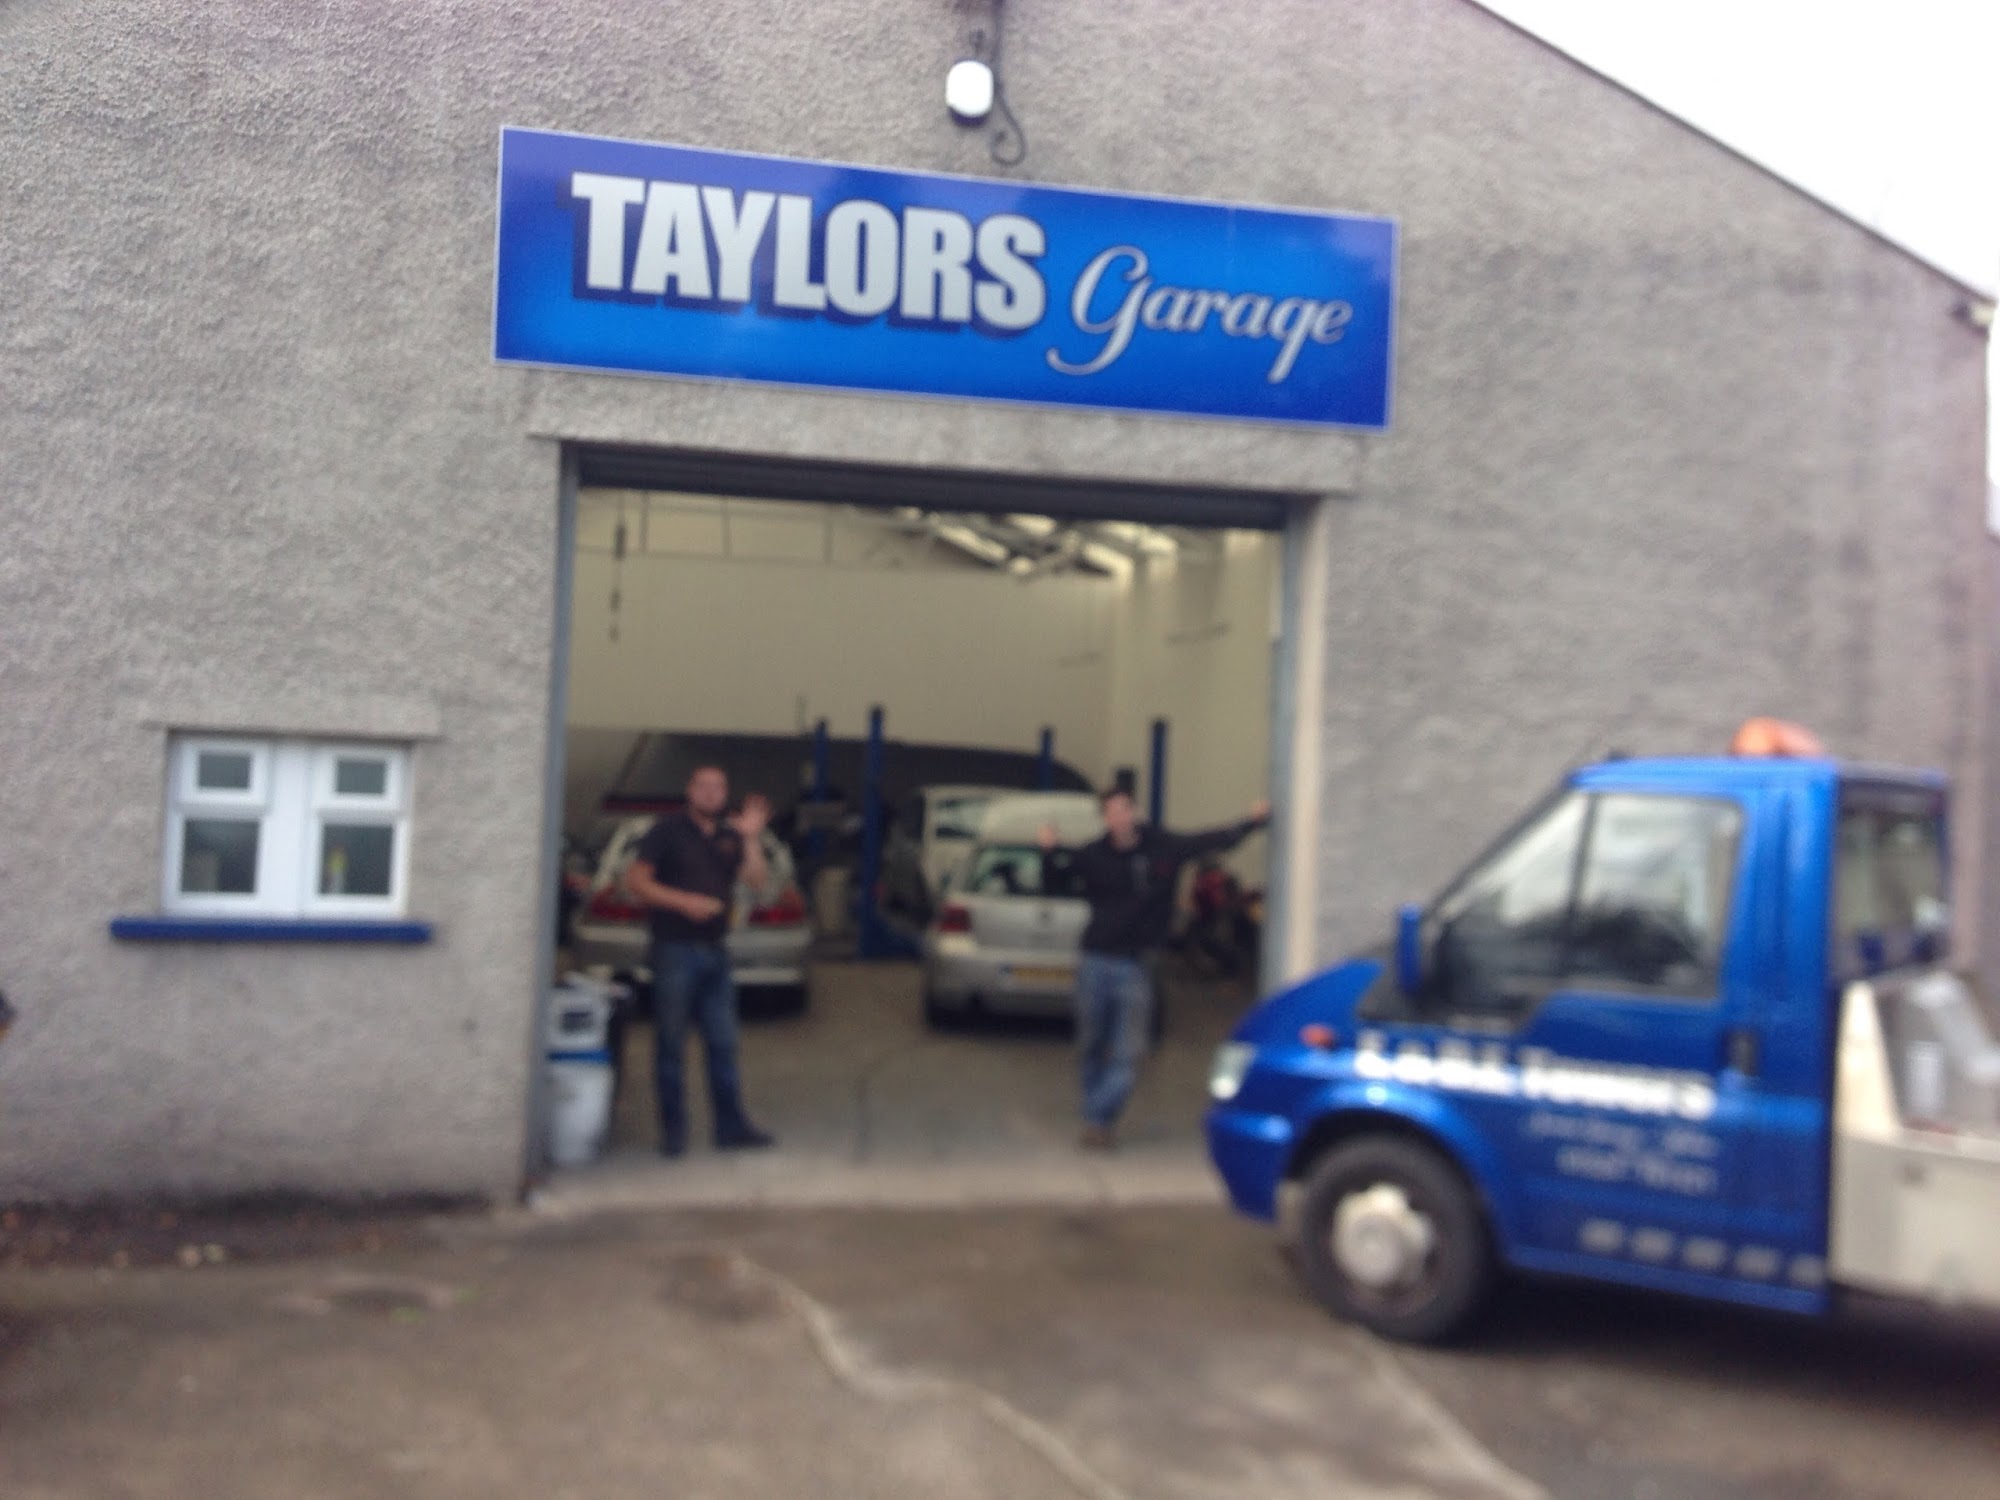 Taylors Garage